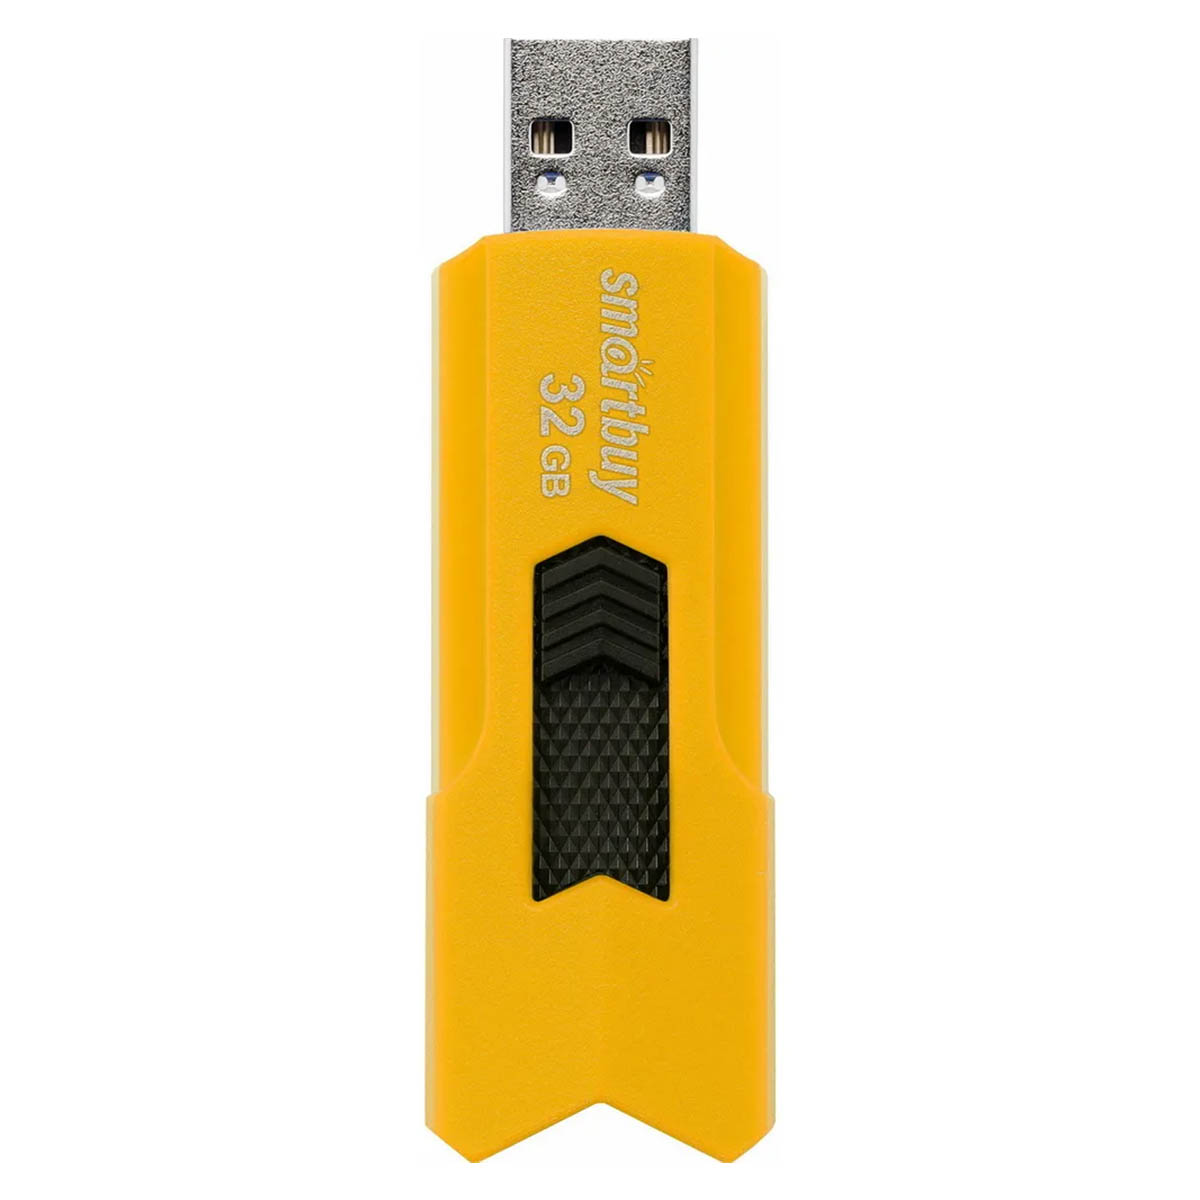 Флешка SMARTBUY Stream, USB 2.0, 32GB, цвет желтый